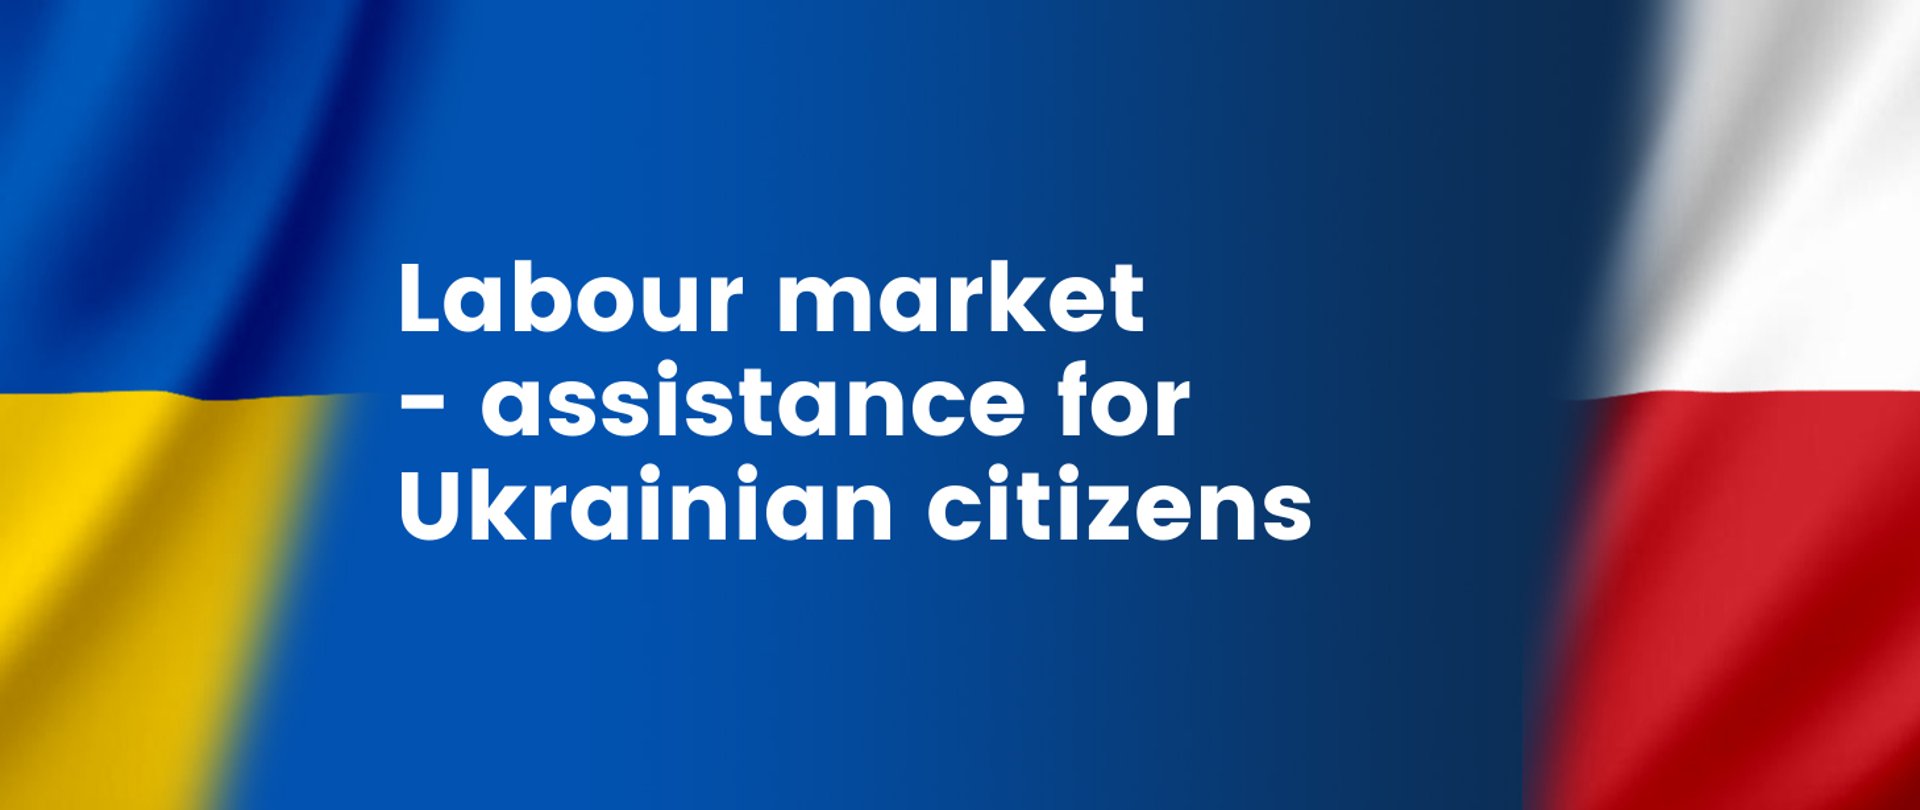 Labour market - assistance for Ukrainian citizens